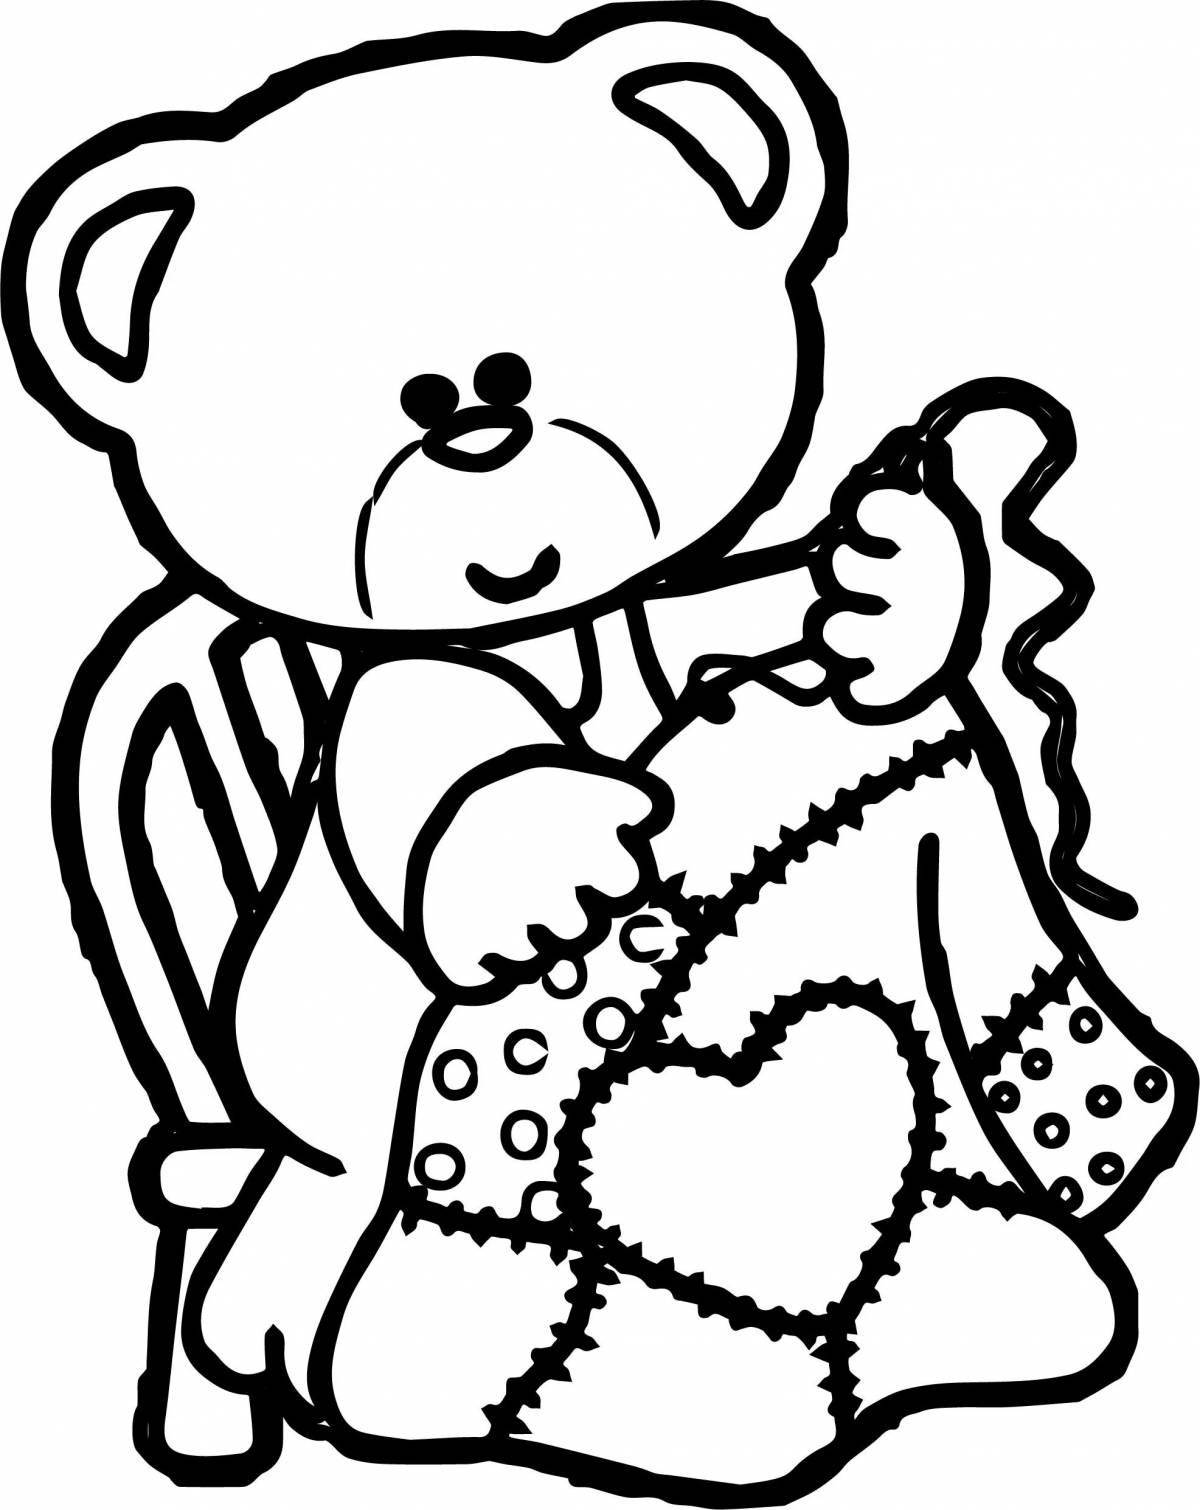 Coloring book cute teddy bear in baby pants